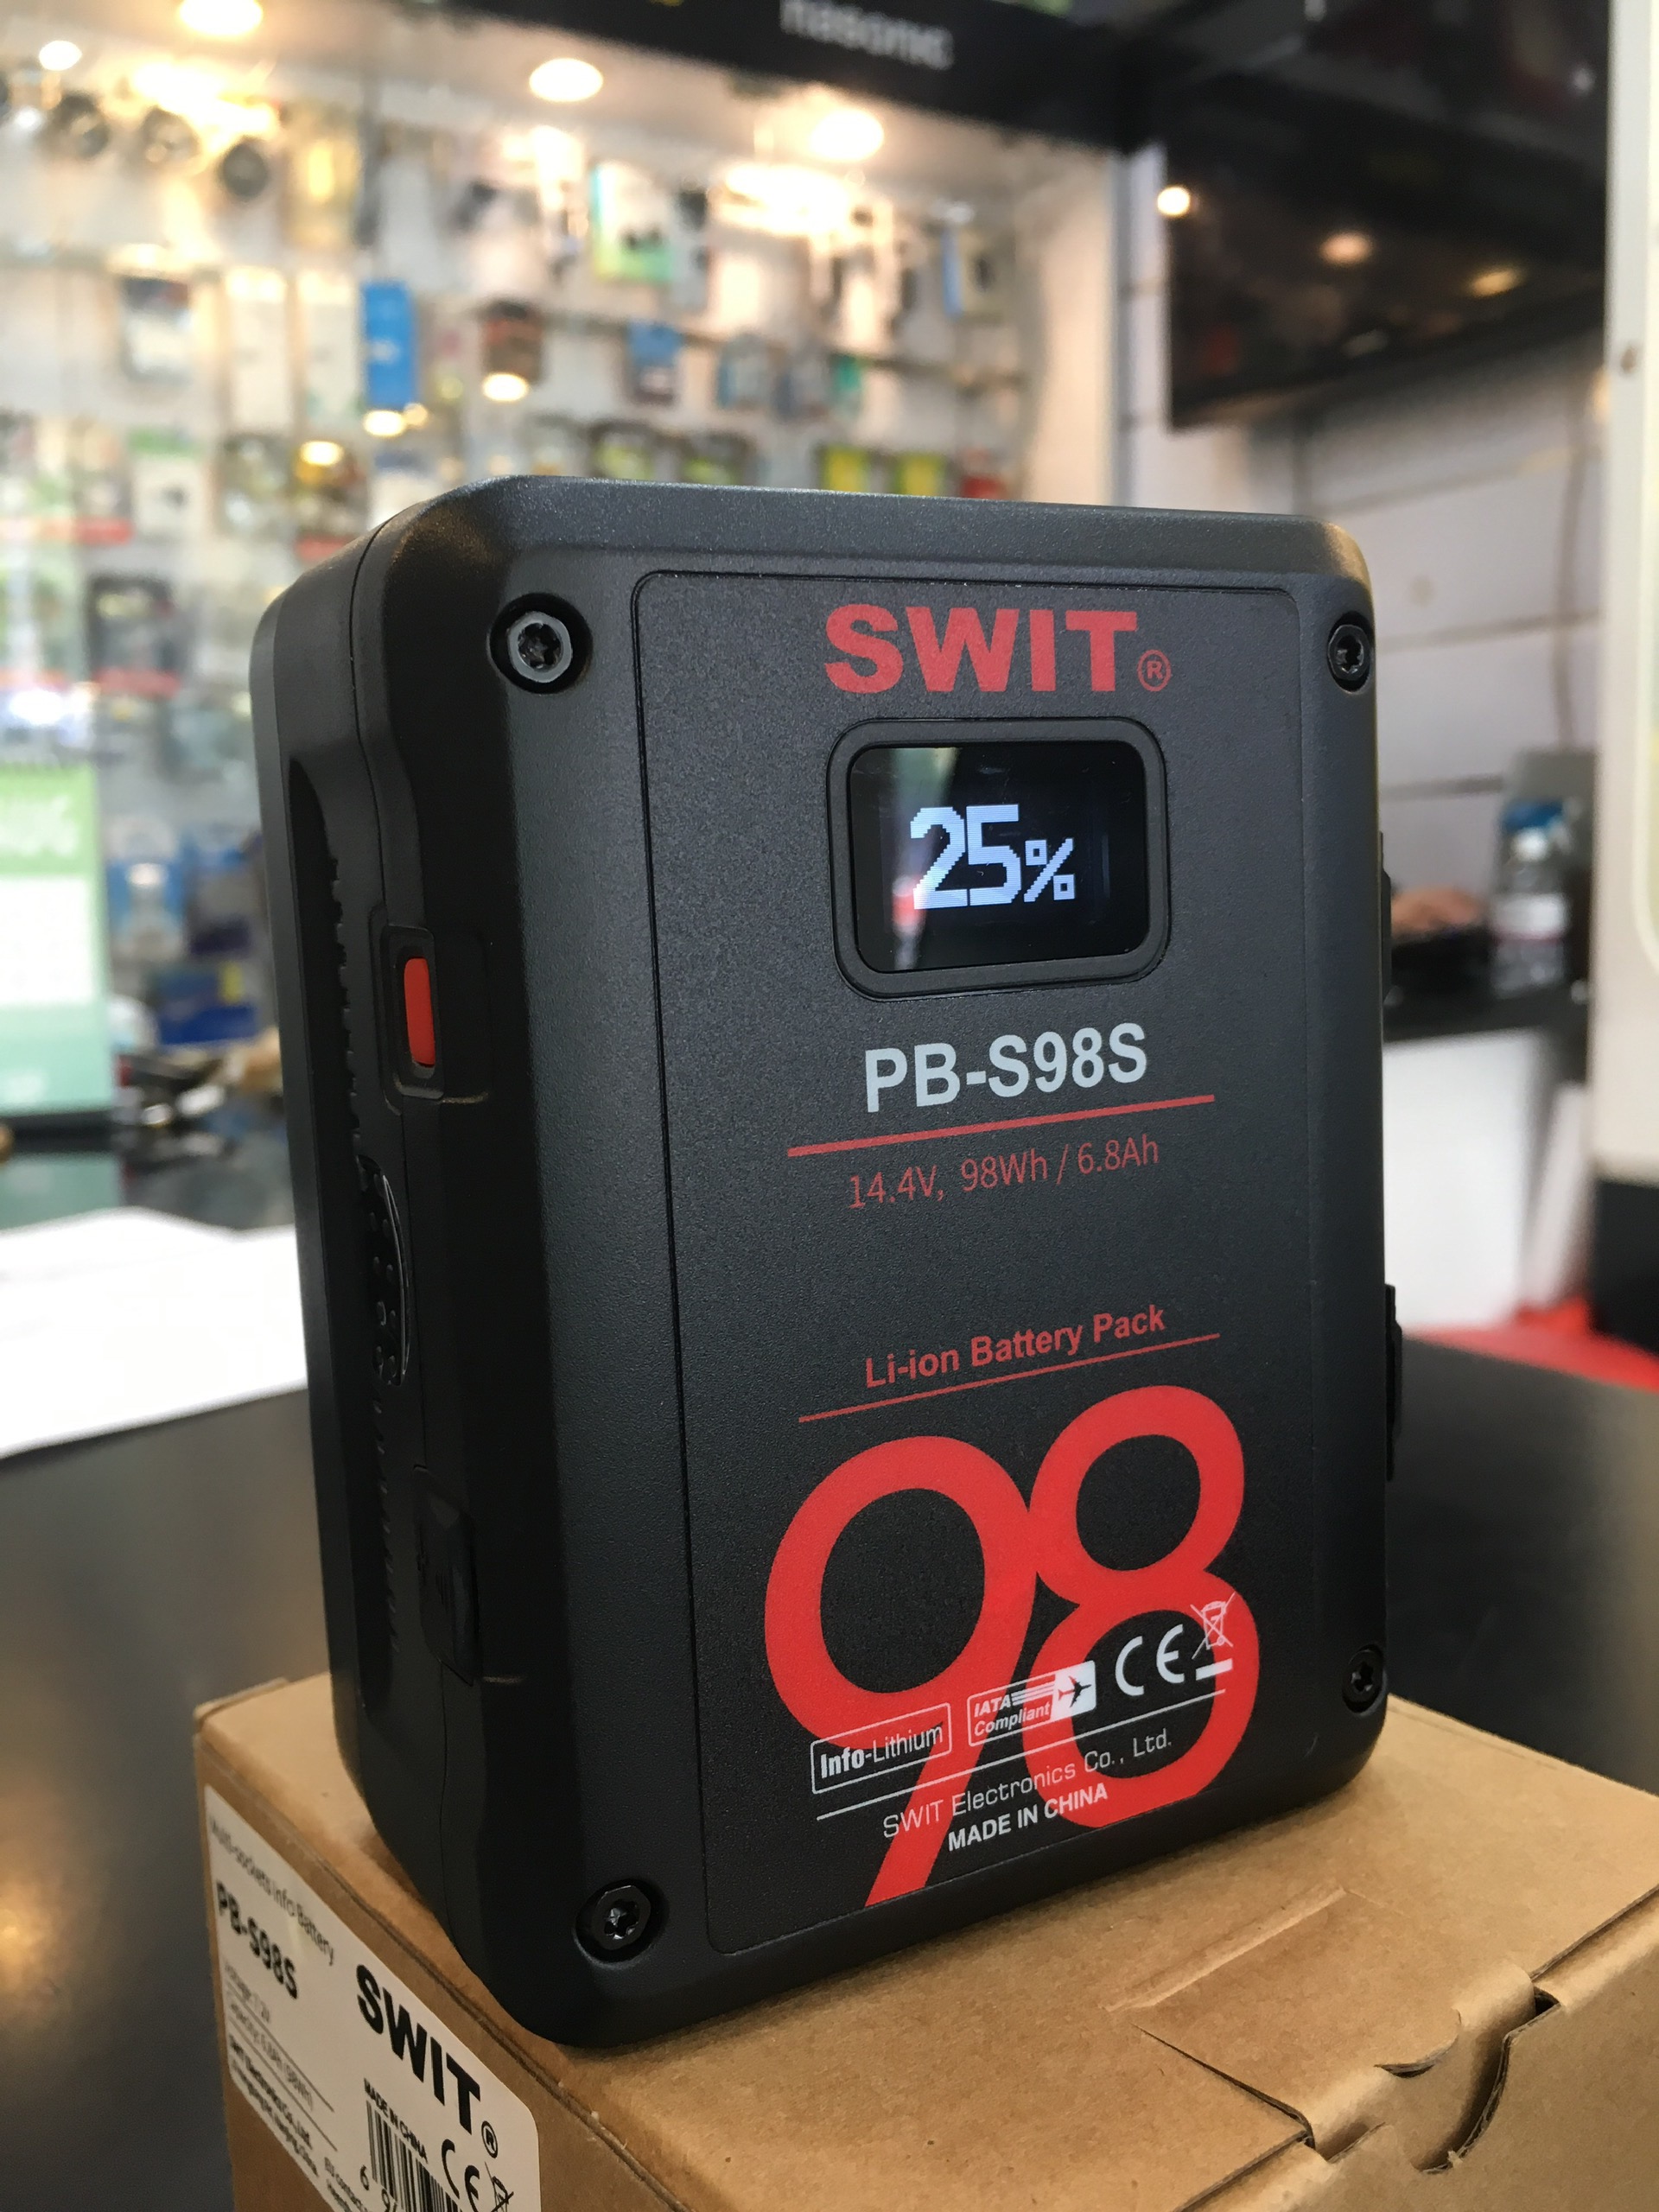  Pin SWIT PB-S98S 14.4V 98Wh  |  Chính hãng